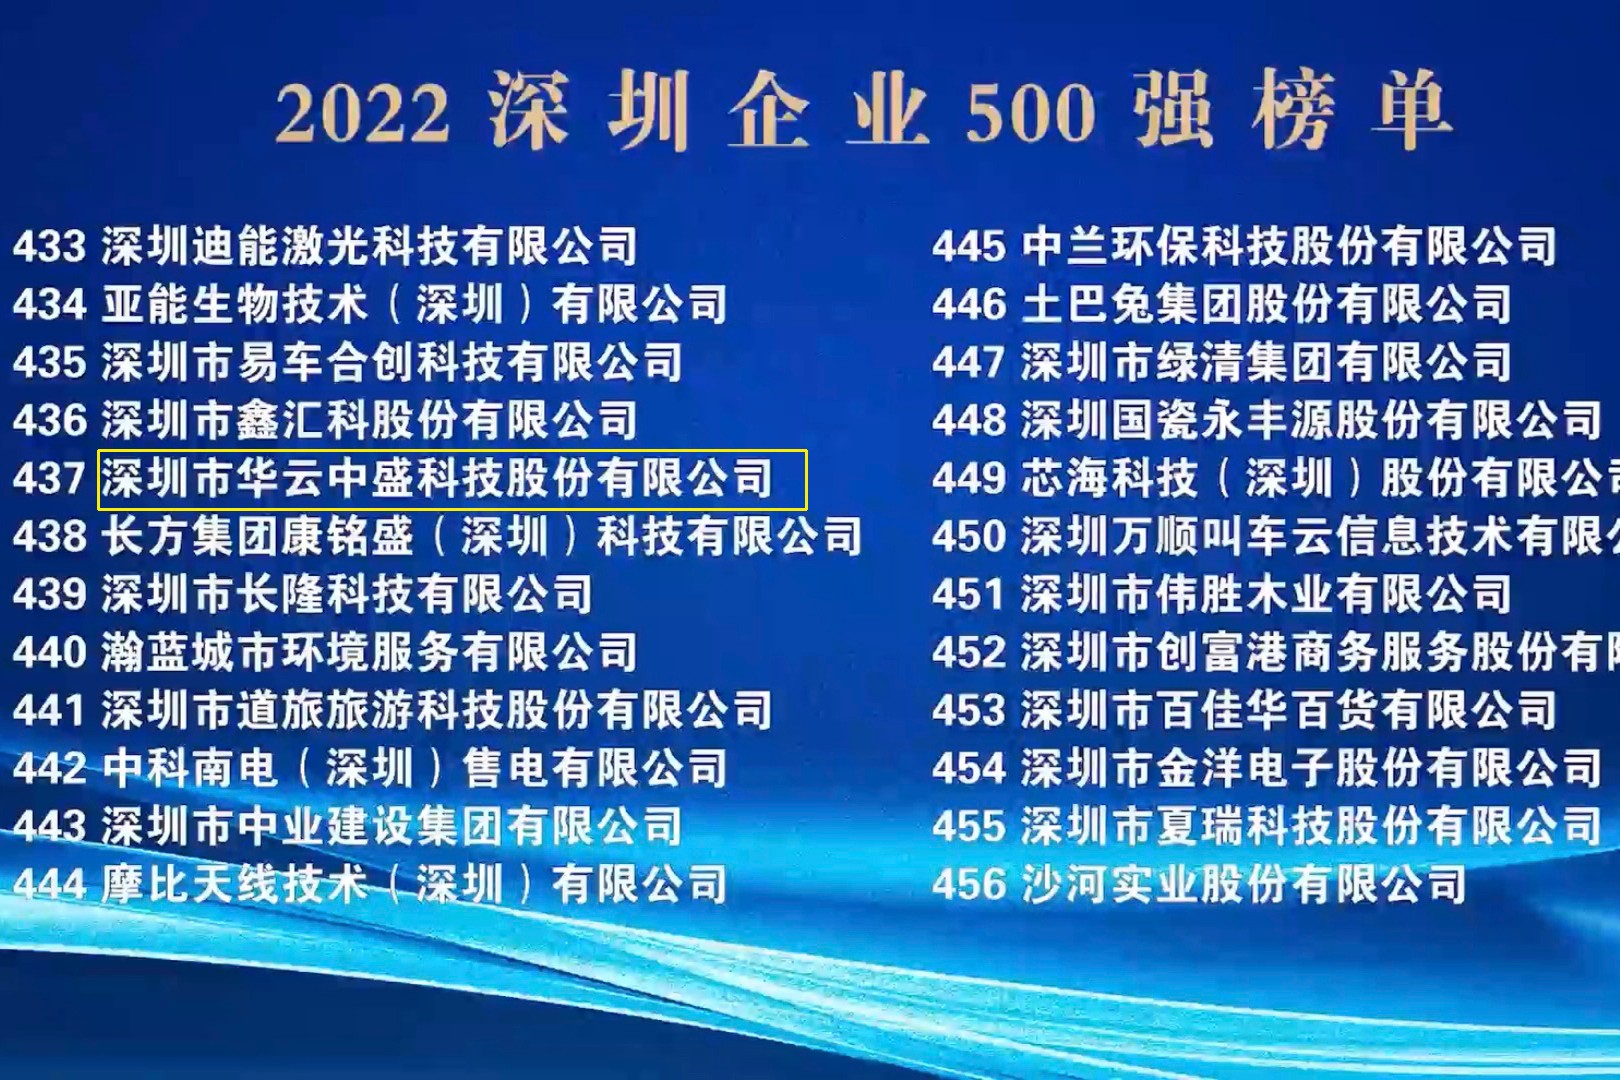 喜讯：华云中盛再次荣登“深圳500强企业榜单”